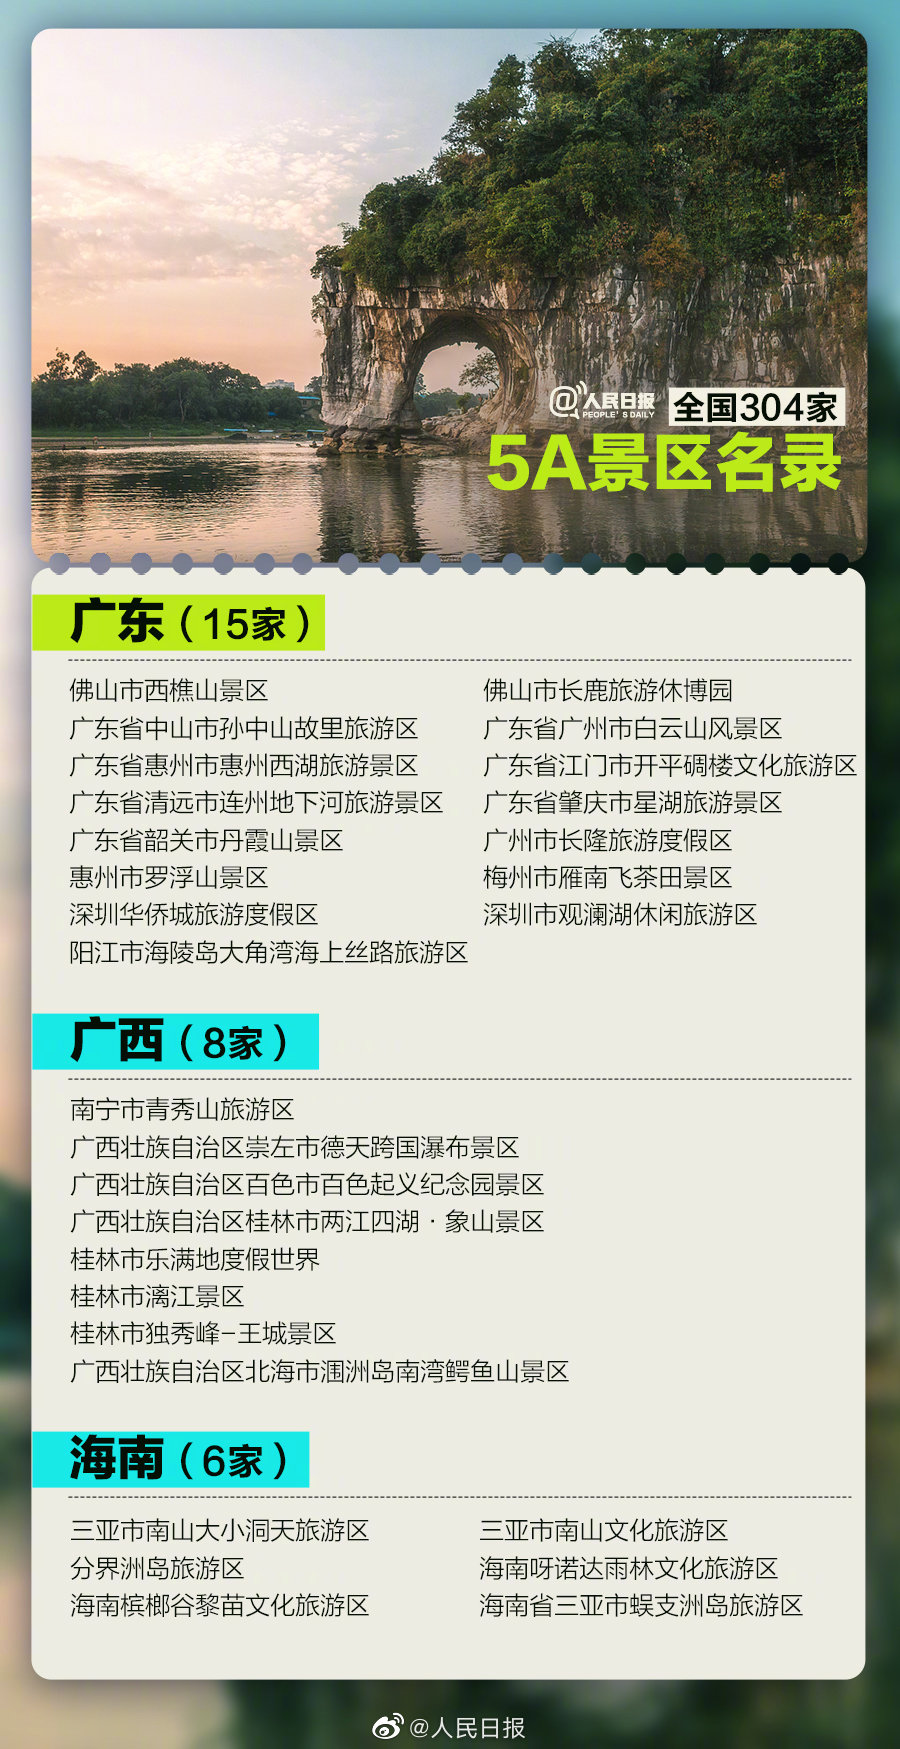 云南有9家304家5a景区全名单数数看你去过多少个了